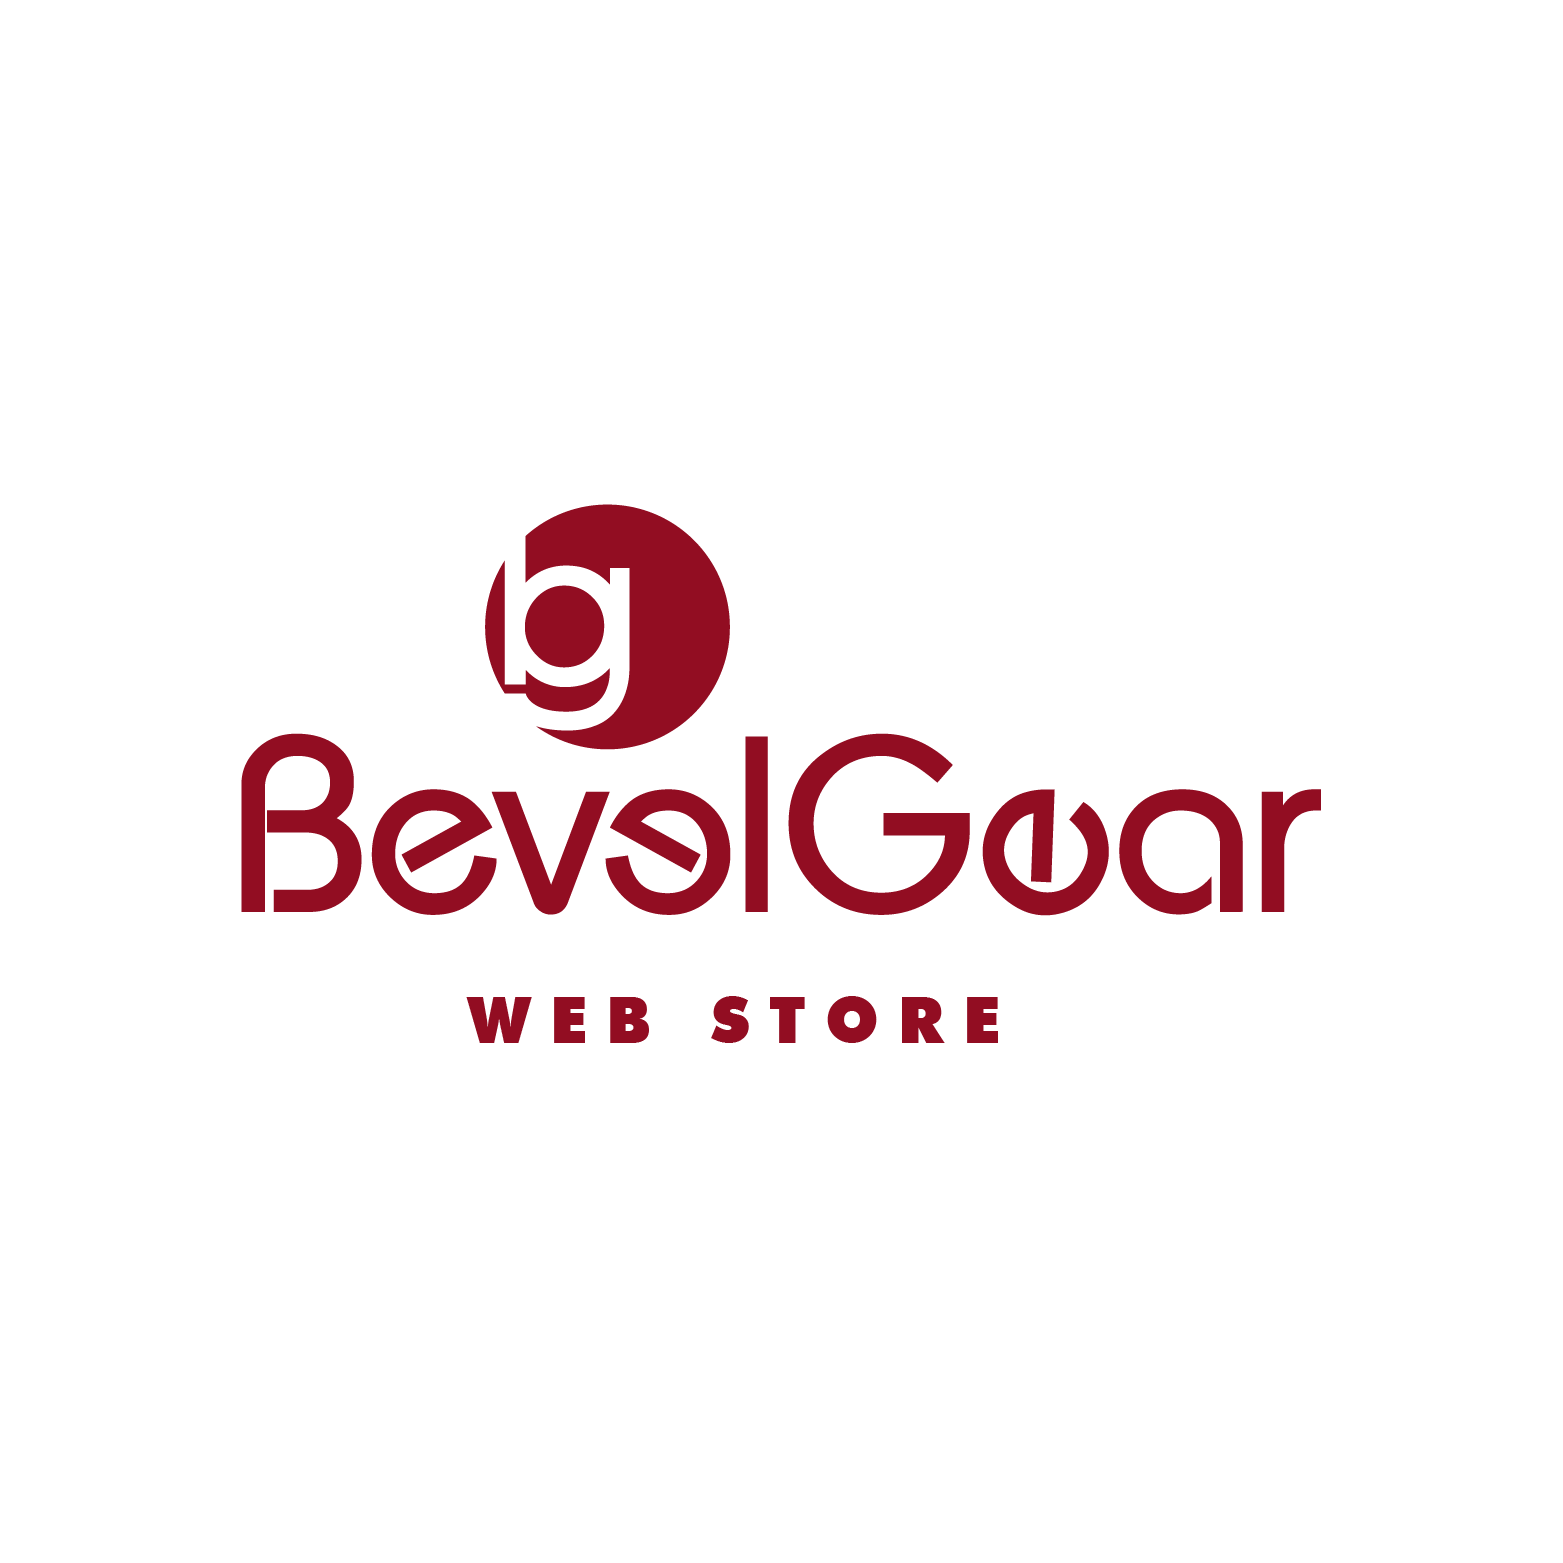 BevelGear Web Store